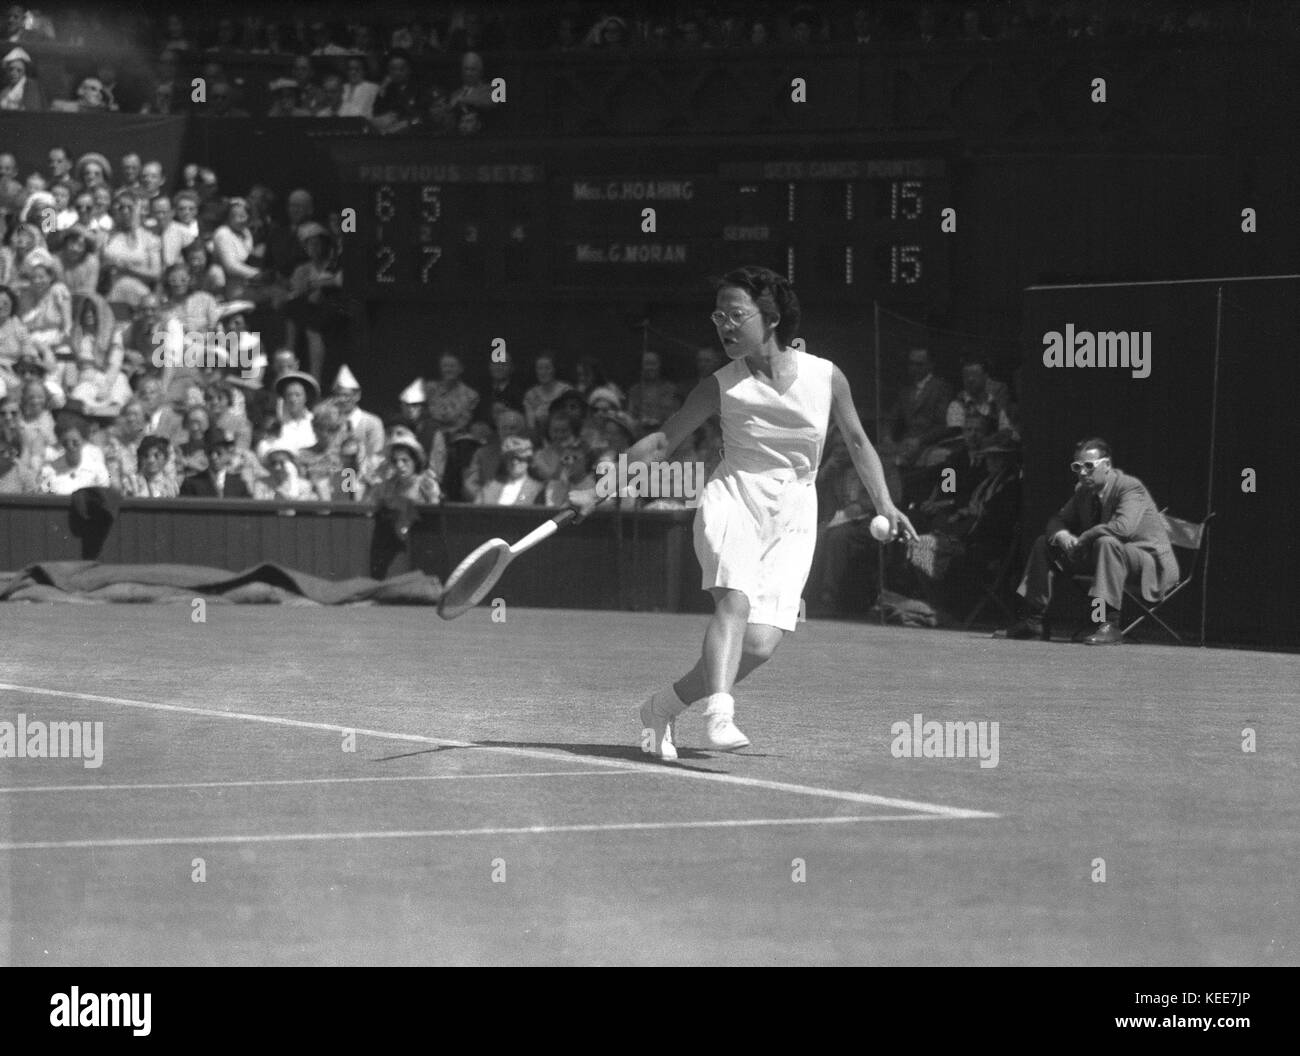 Wimbledon Tennis Championships 1949 "kleines Juwel Juwel Hoahing versus "Gorgeous" gussie Moran. 4 ft 9" tall Kleinod gewinnt Ihr Spiel 6-2, 5-7, 6-3 gegen Herrliche Gussie - wer berühmt für das Tragen der ersten frilly knickers und kurzes Kleid, entworfen von Teddy Tinling, in Ihrer vorherigen Match war. Foto von Tony Henshaw *** Local Caption *** Von der 100-Original Negativ. Stockfoto